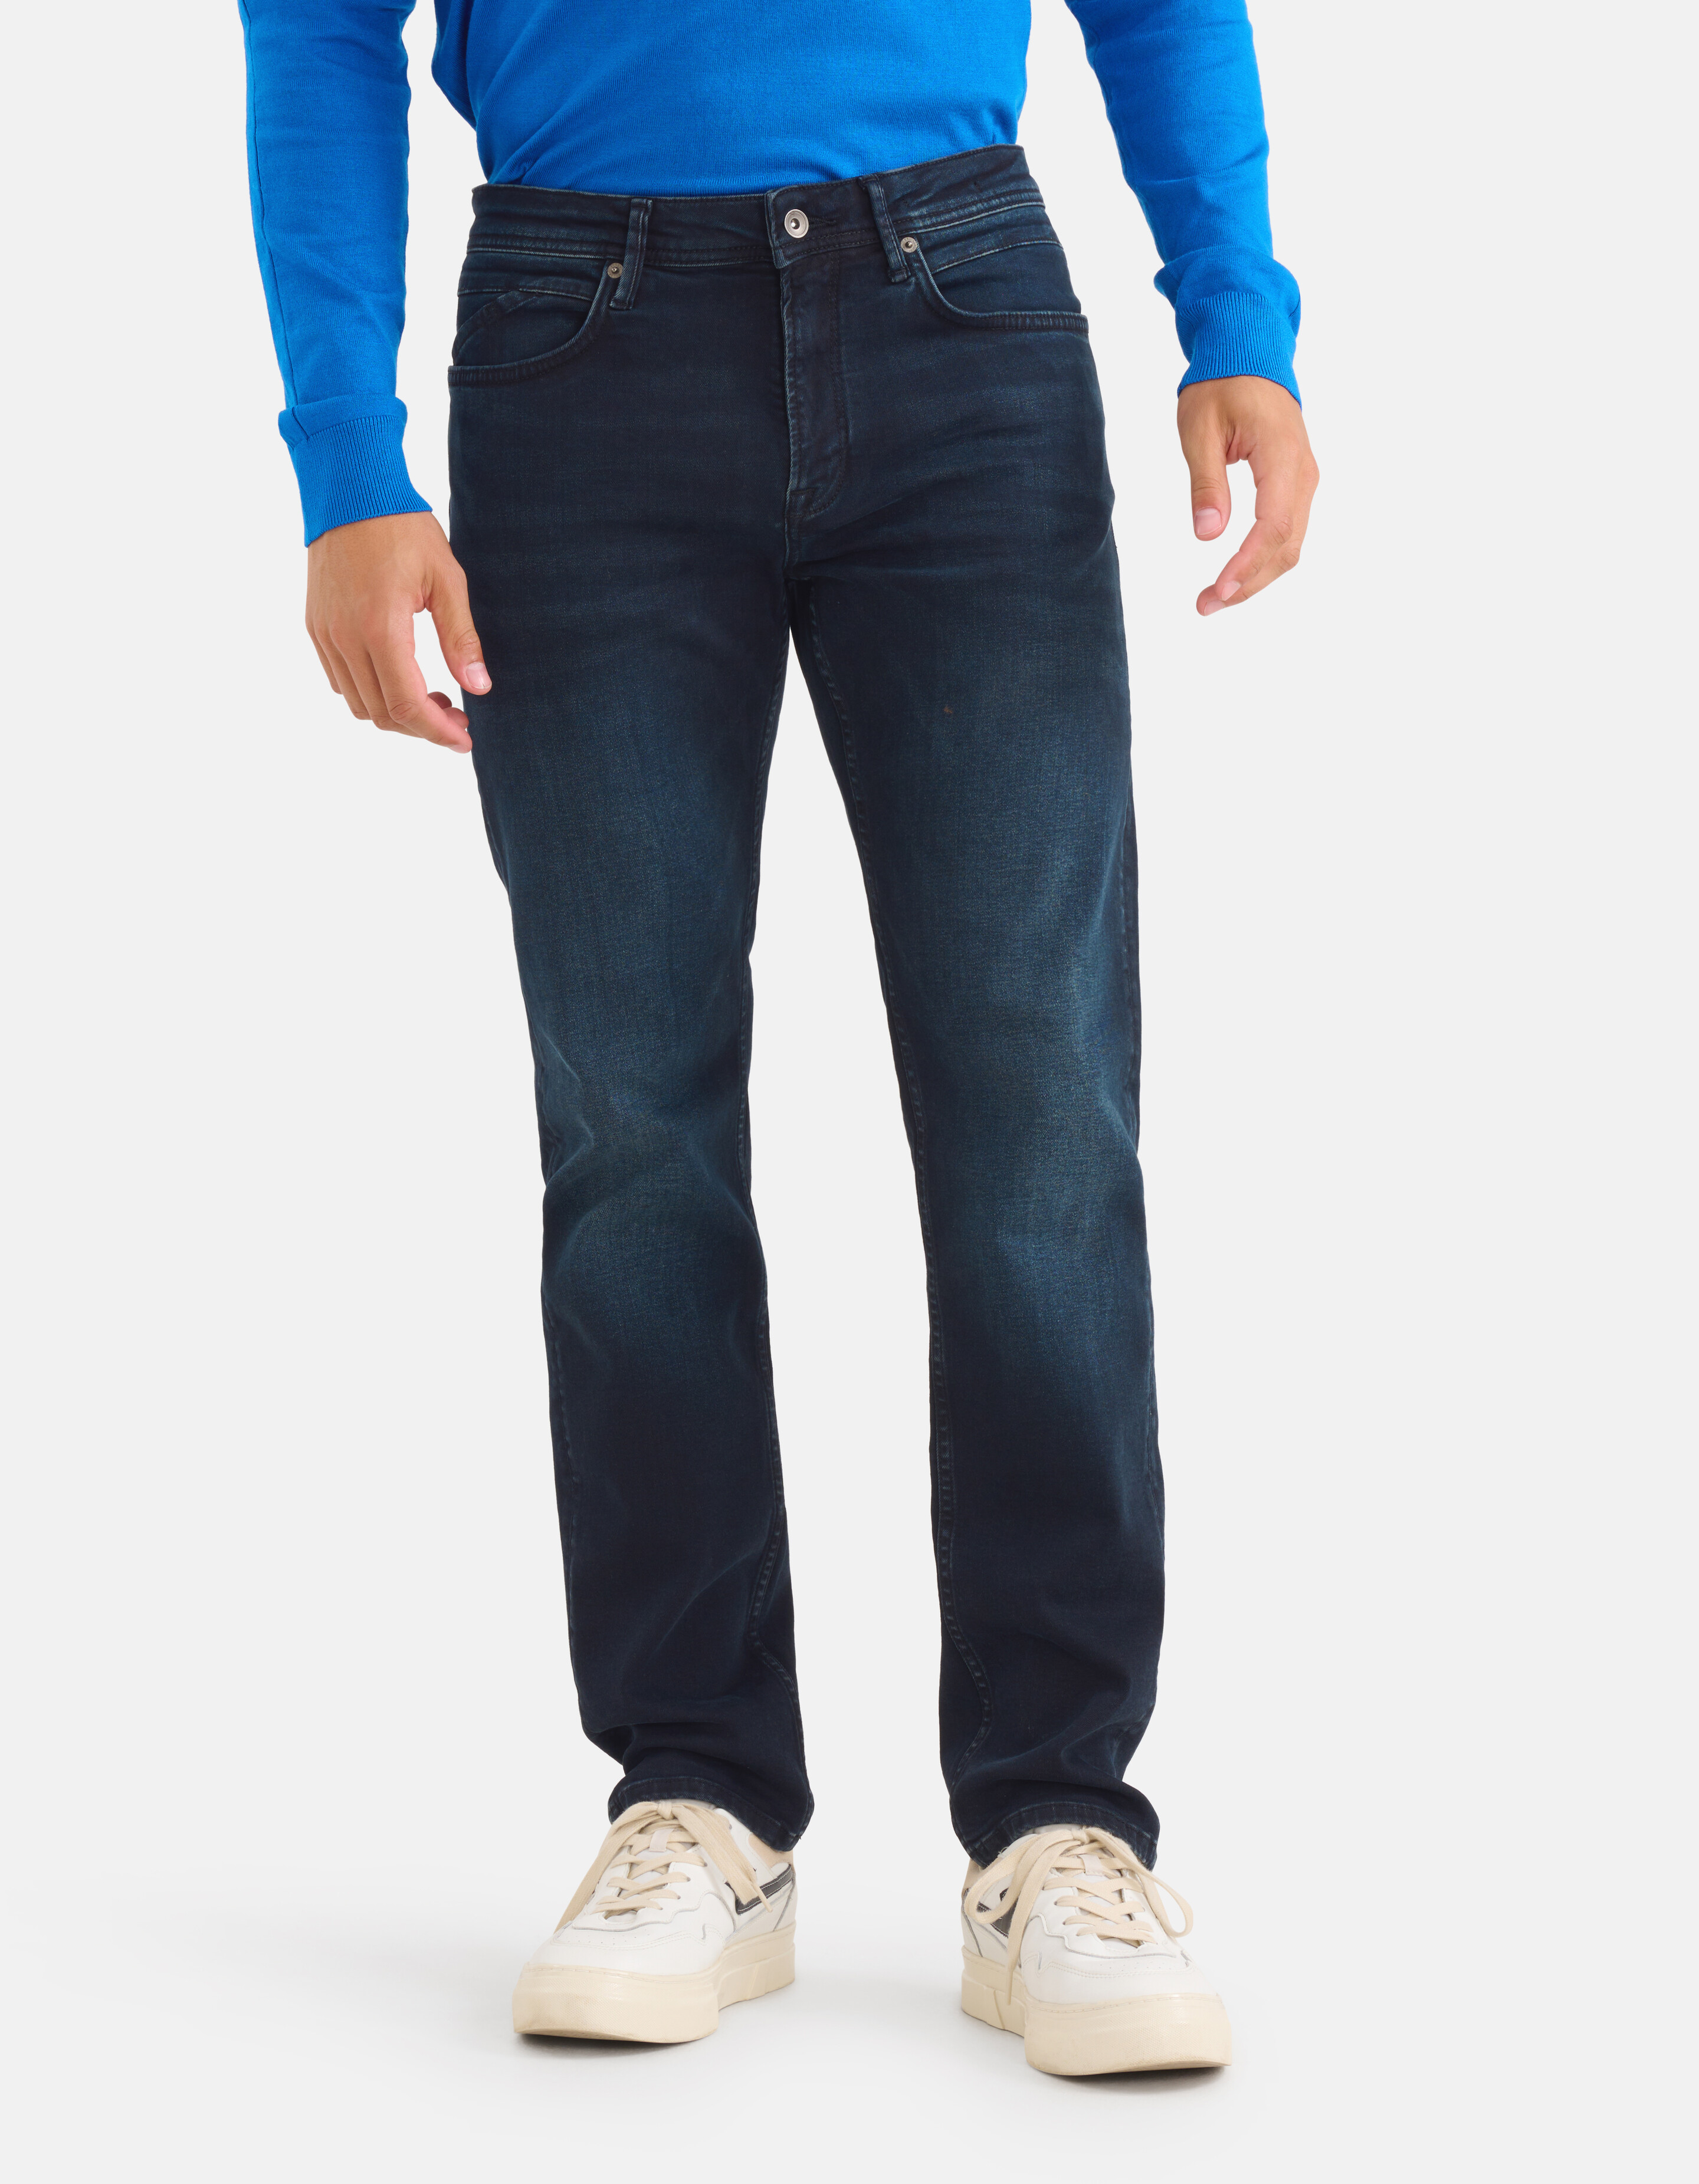 Straight Jeans Blauw/Zwart L34 Refill